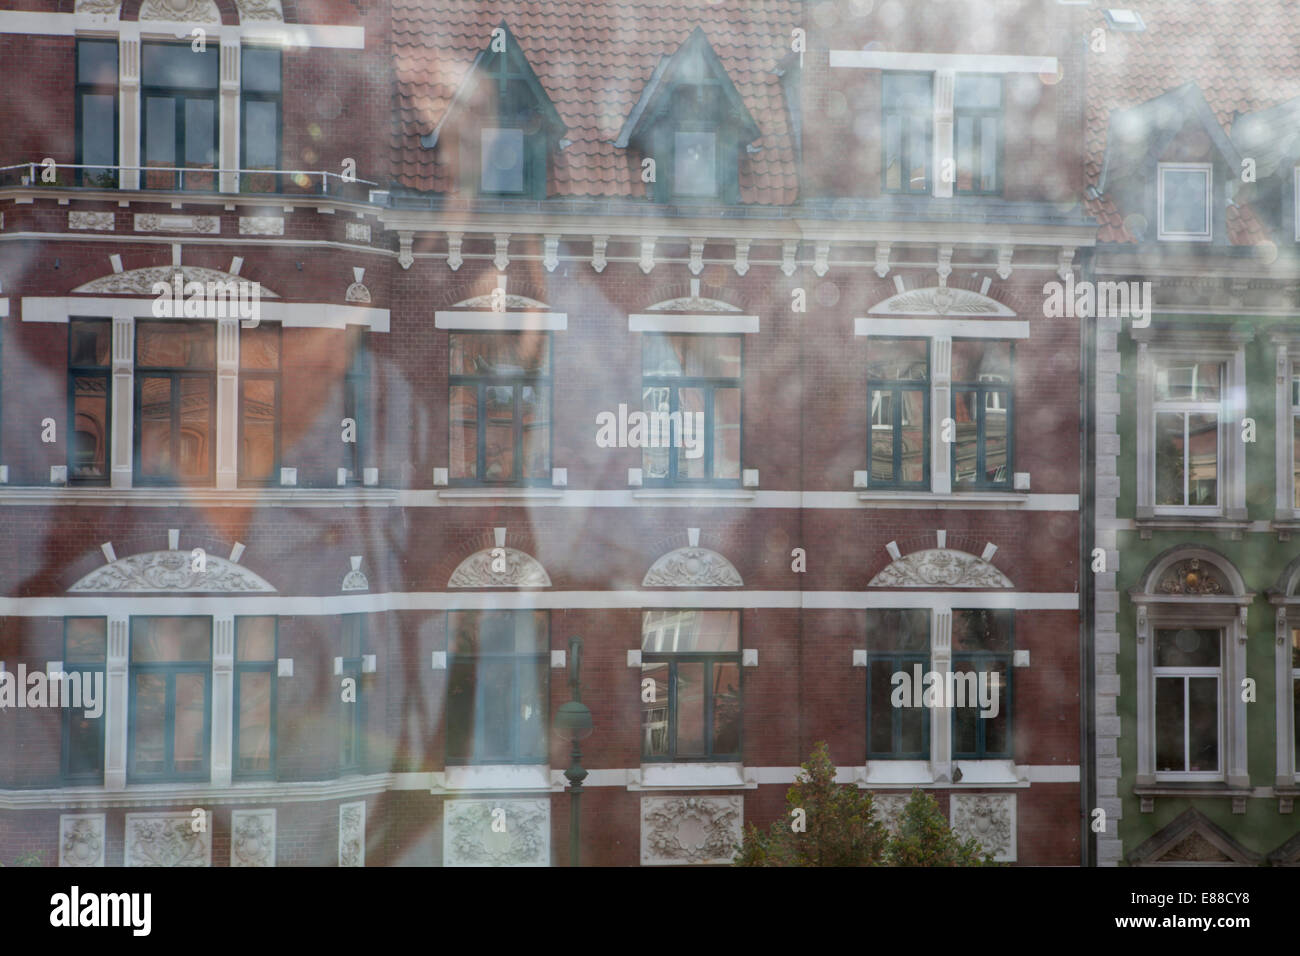 Blick durch eine schmutzige Fensterscheibe Lindener Marktplatz, Hannover, Niedersachsen, Deutschland, Europa, Blick Durch Eine Schmutzige Fens Stockfoto